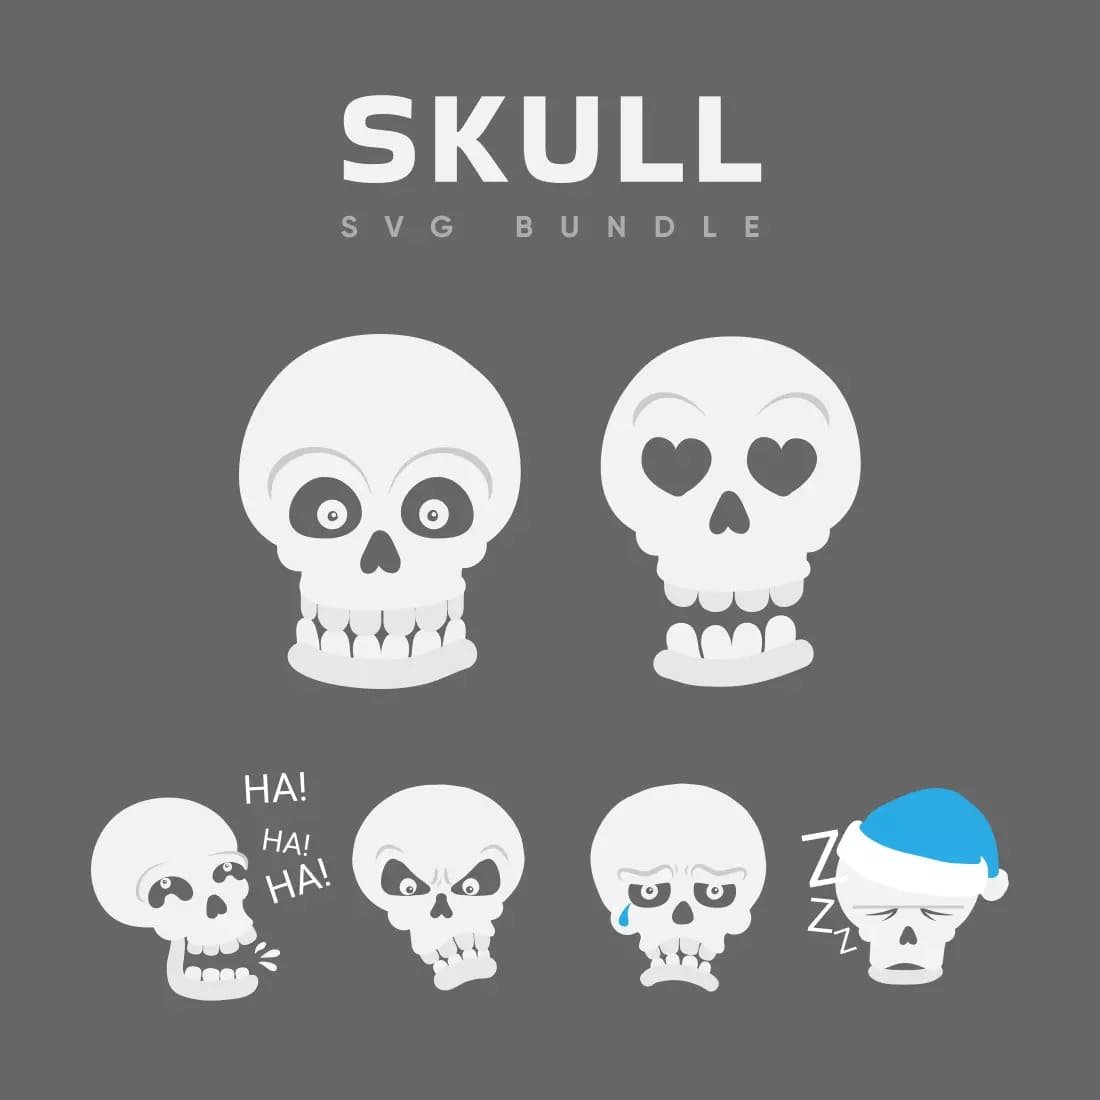 Skull SVG Bundle Preview 11.